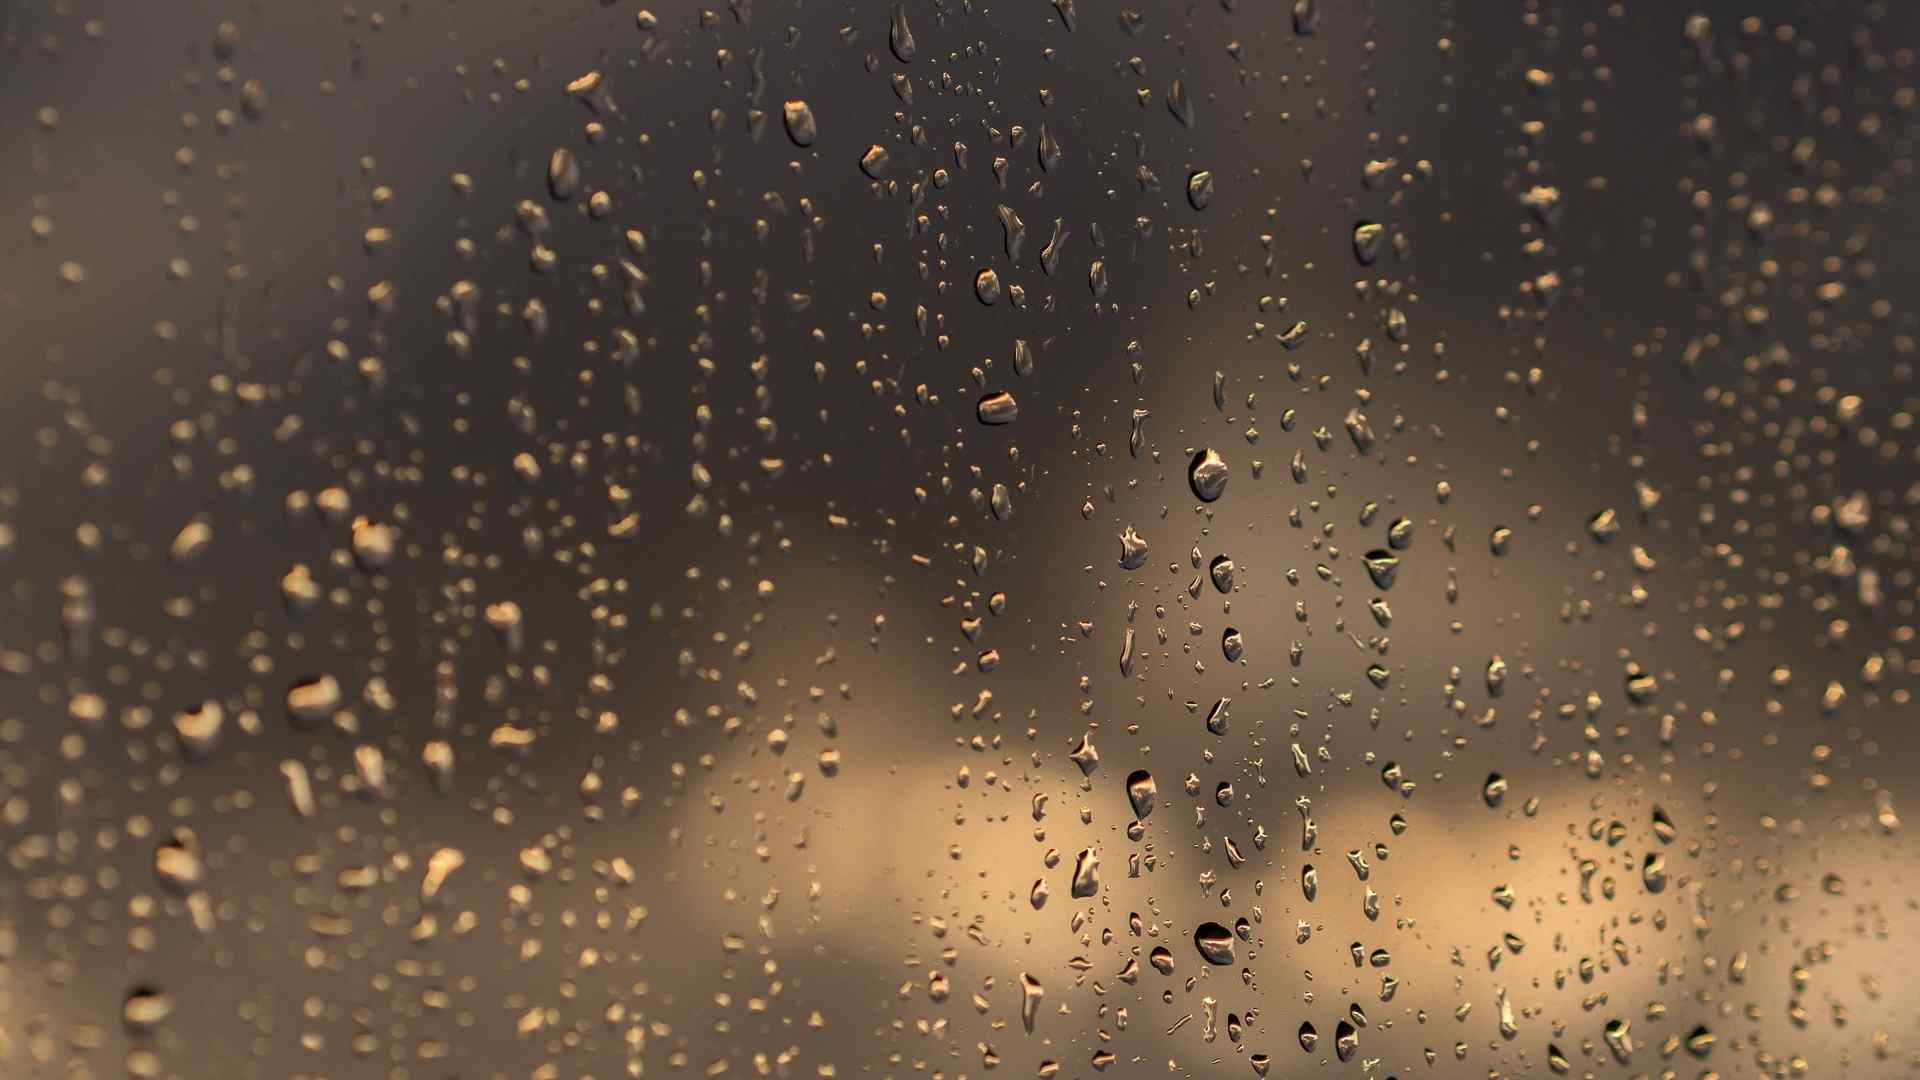 窗户上滑落的雨滴唯美图片桌面壁纸